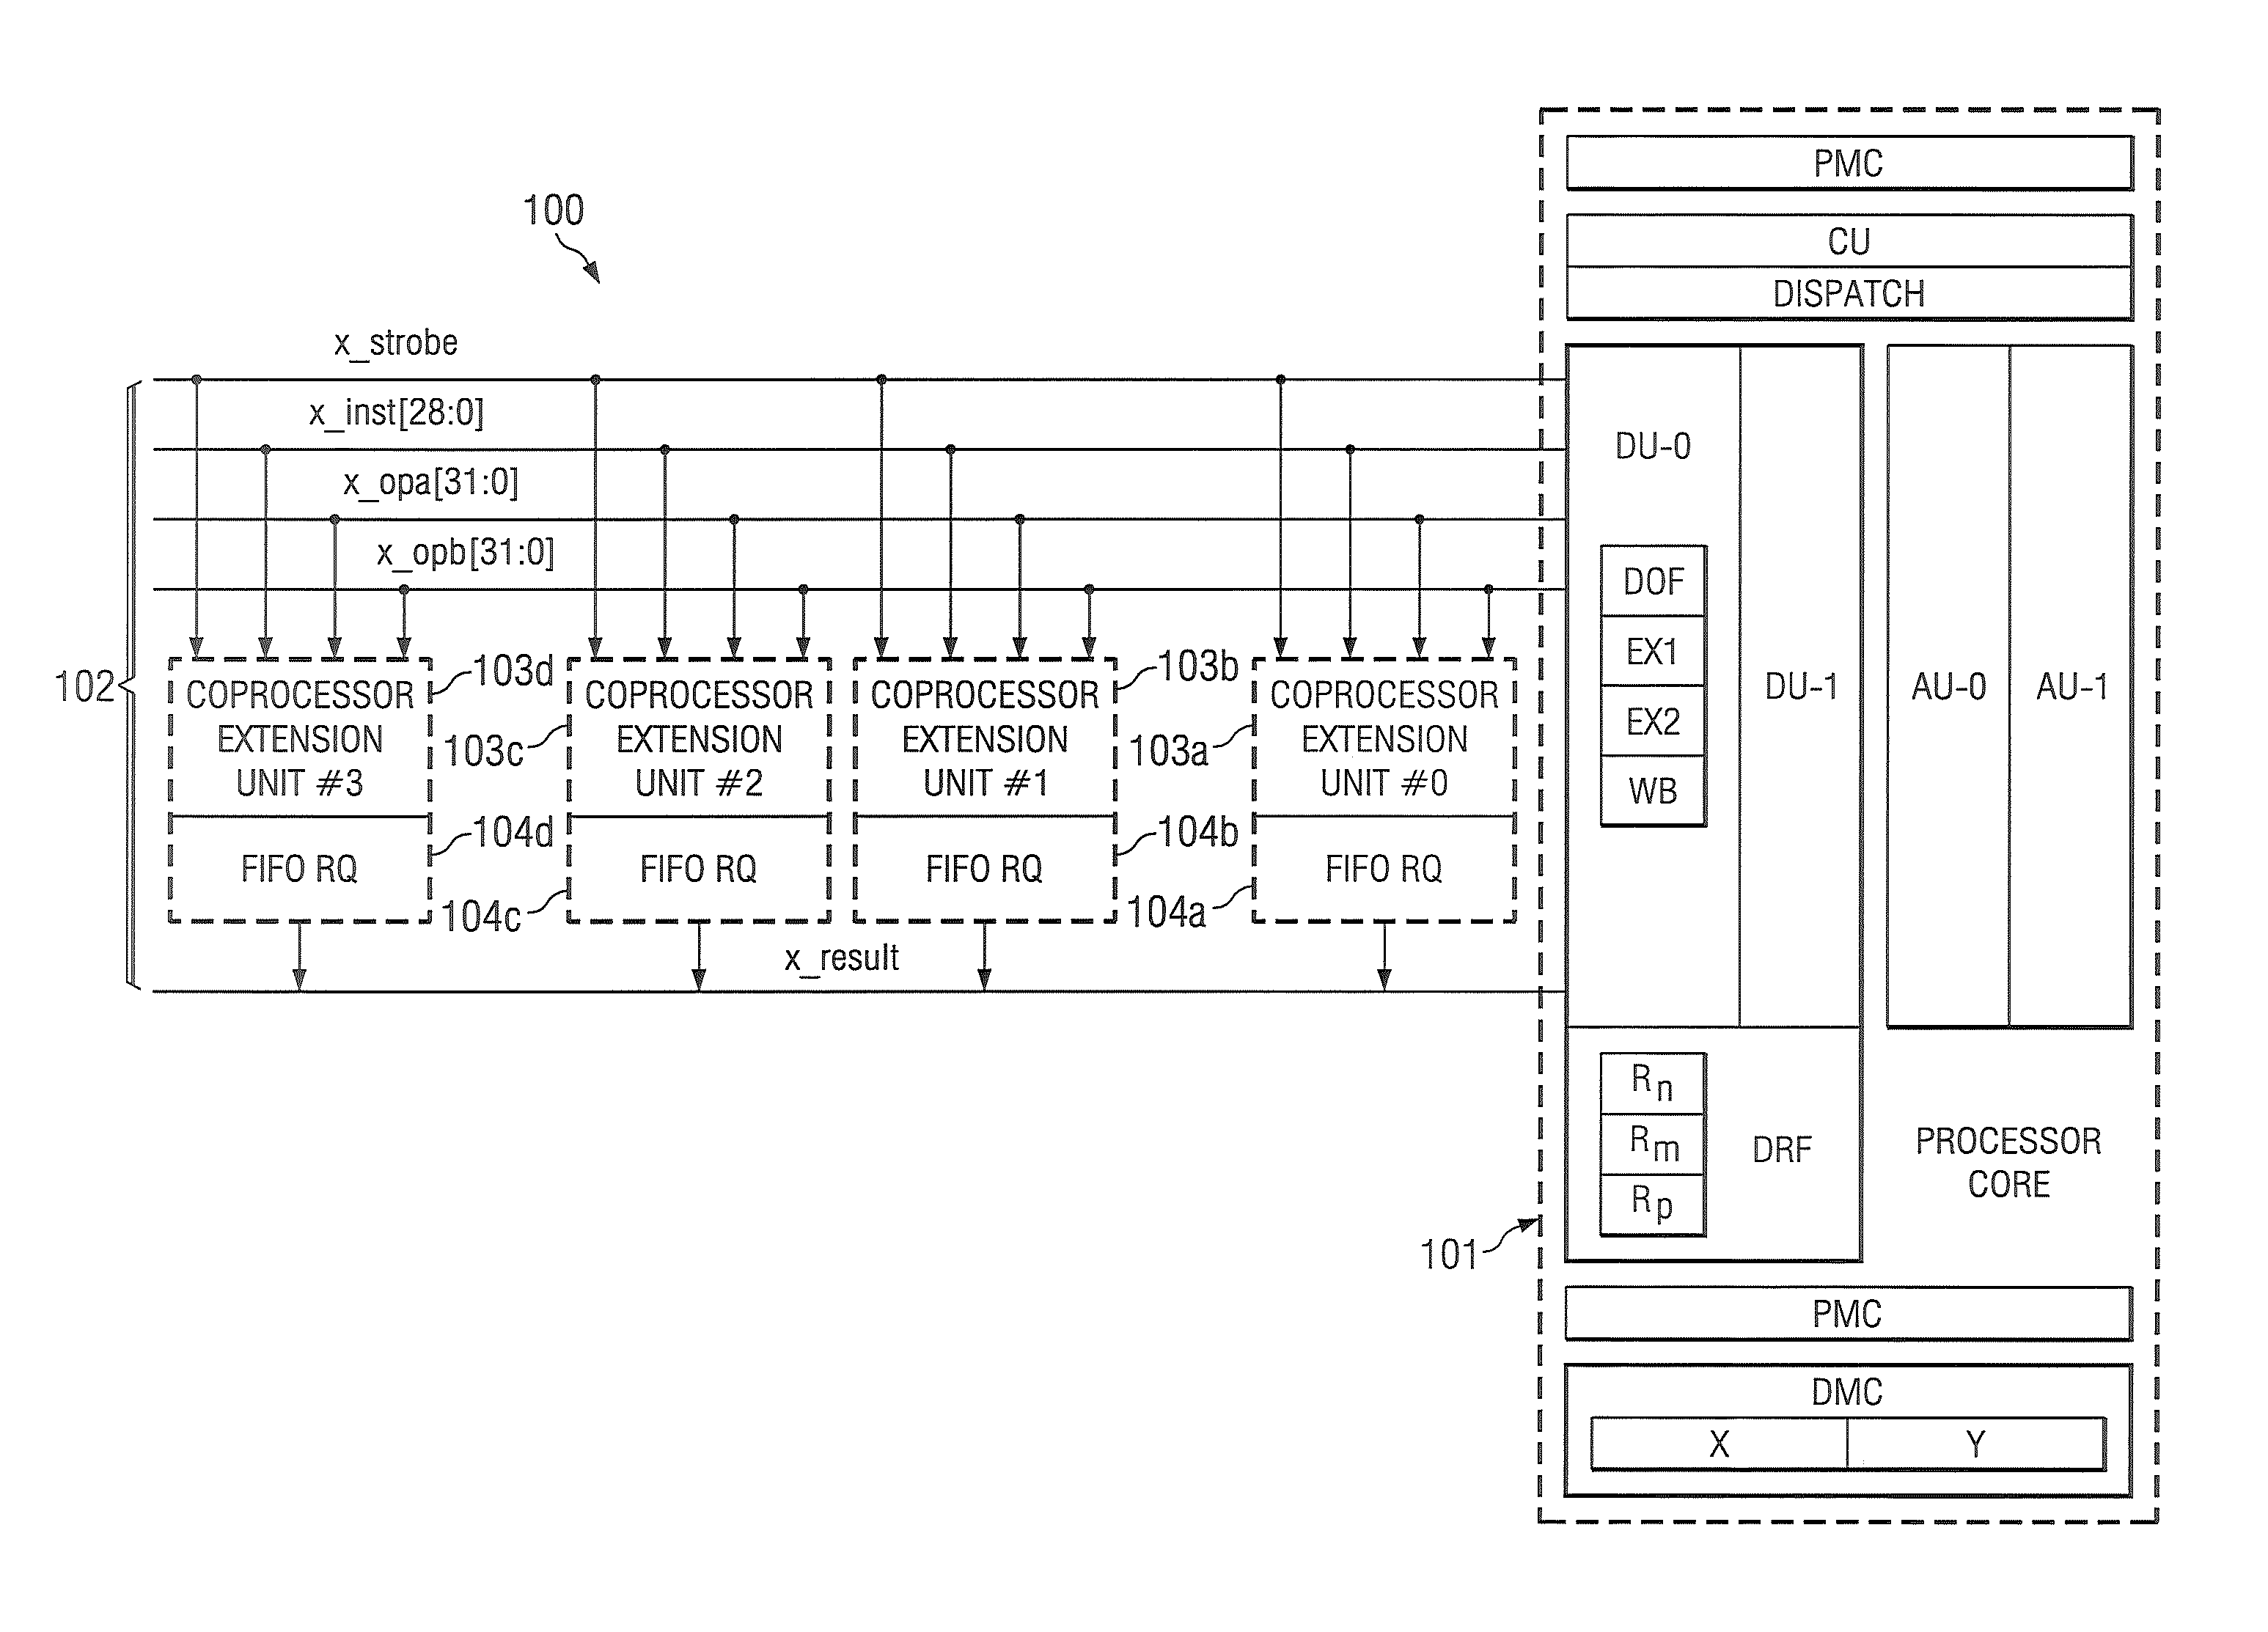 Coprocessor extension architecture built using a novel split-instruction transaction model